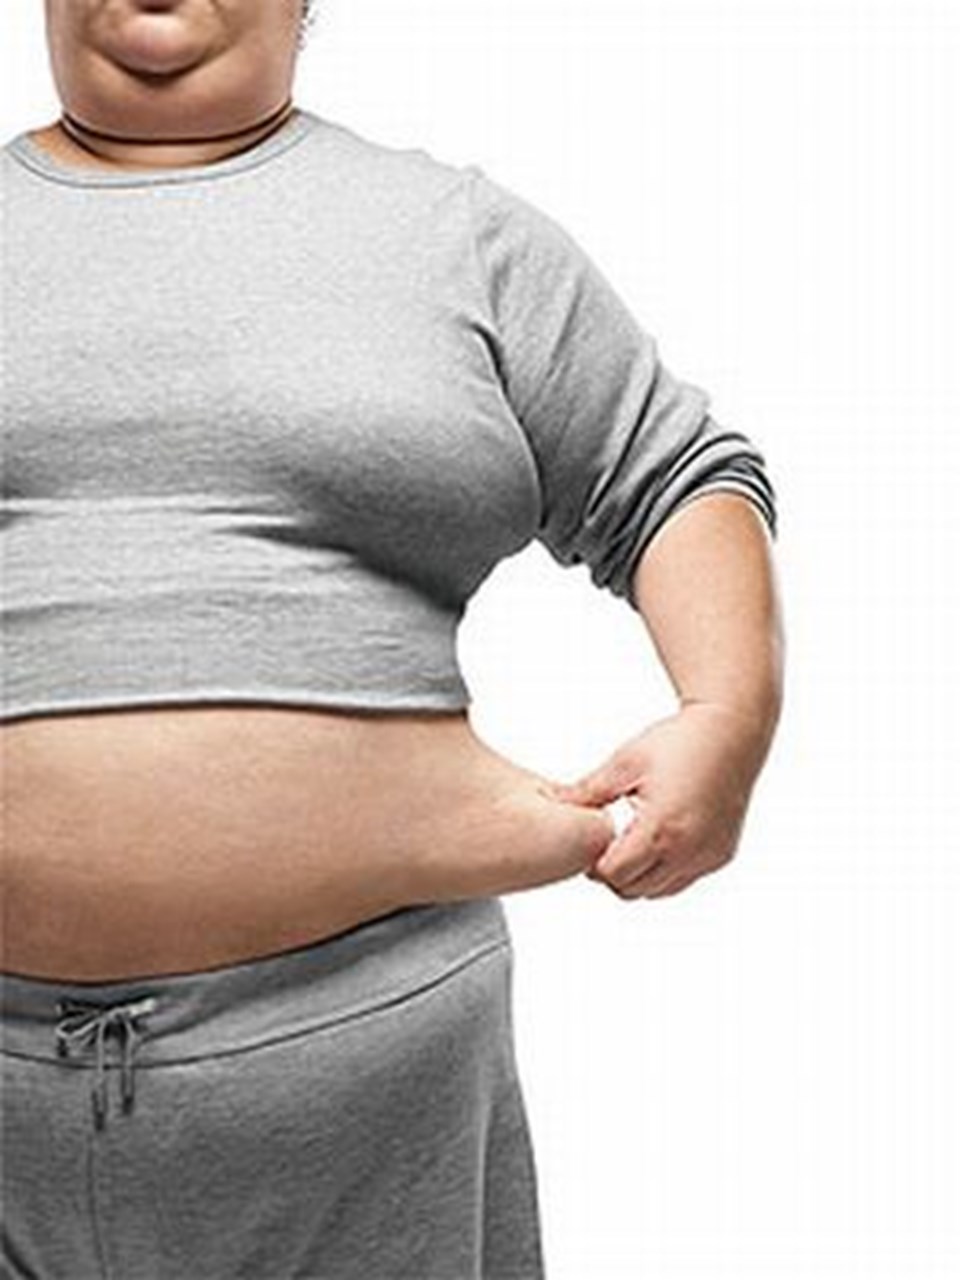 Obezite, kireçlenmenin de nedeni - 1